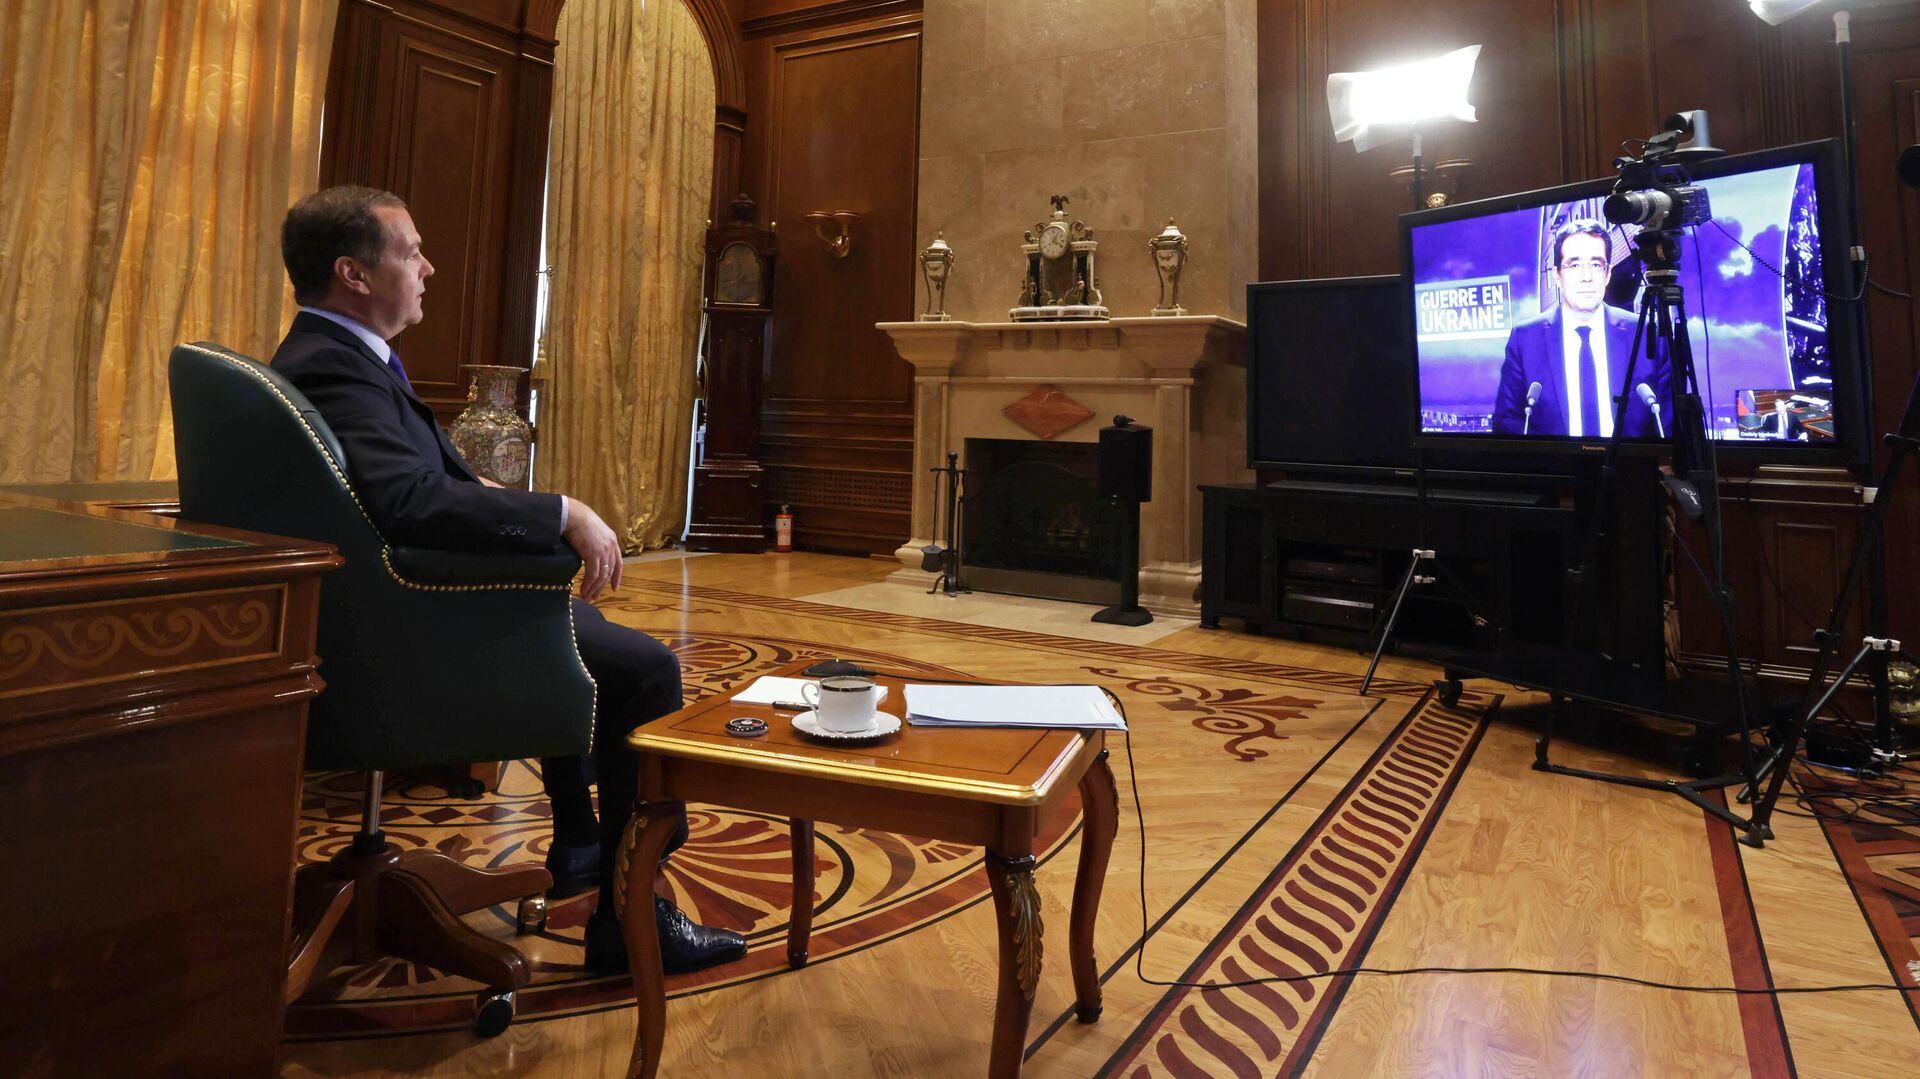 Интервью толстого французскому телевидению последнее. Медведев интервью. Медведев интервью французскому телеканалу LCI.